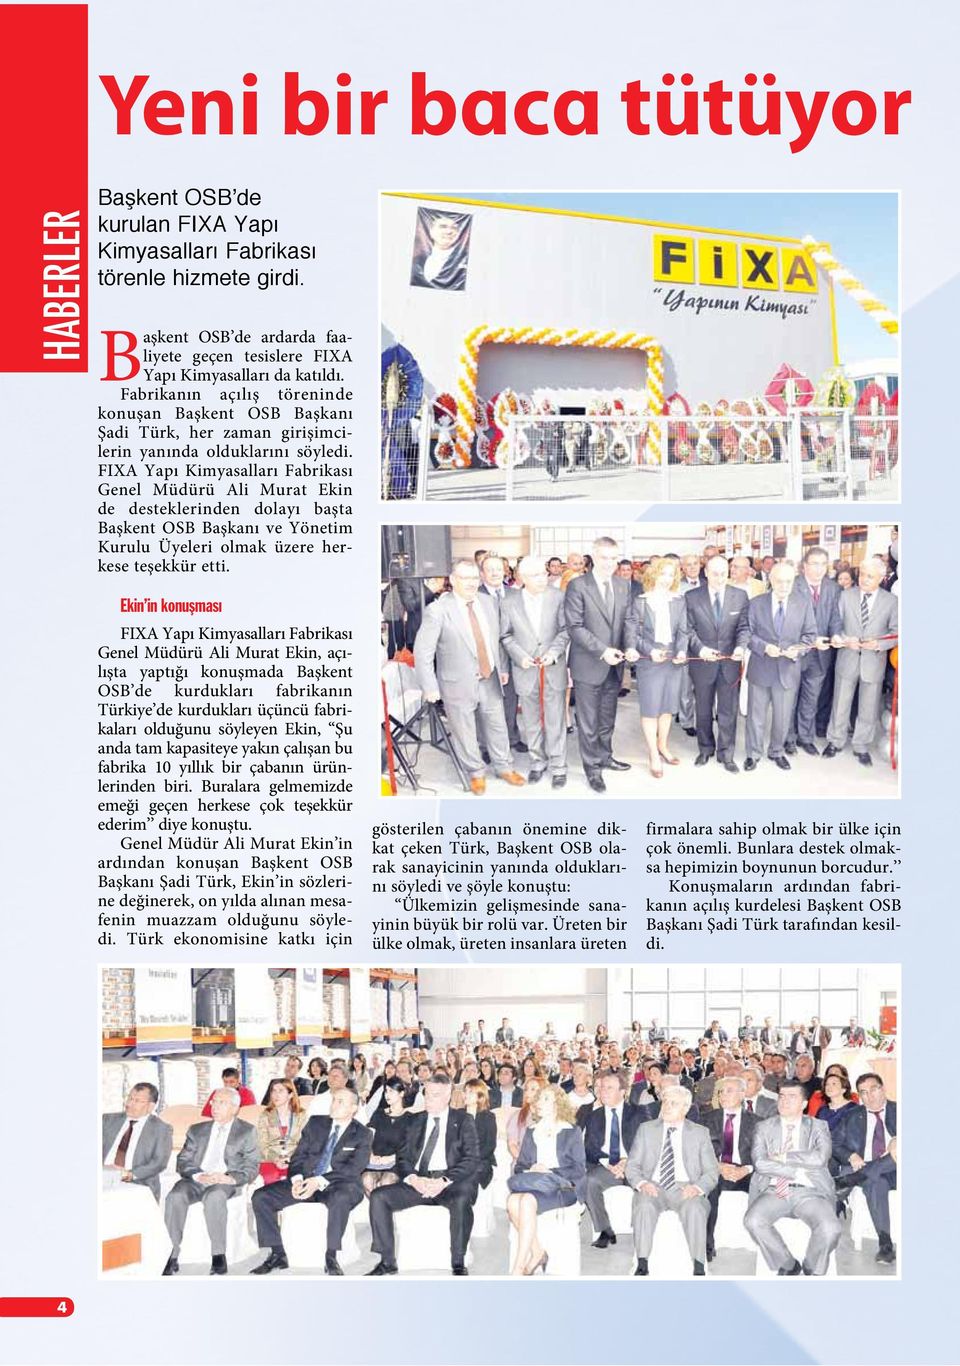 FIXA Yapı Kimyasalları Fabrikası Genel Müdürü Ali Murat Ekin de desteklerinden dolayı başta Başkent OSB Başkanı ve Yönetim Kurulu Üyeleri olmak üzere herkese teşekkür etti.